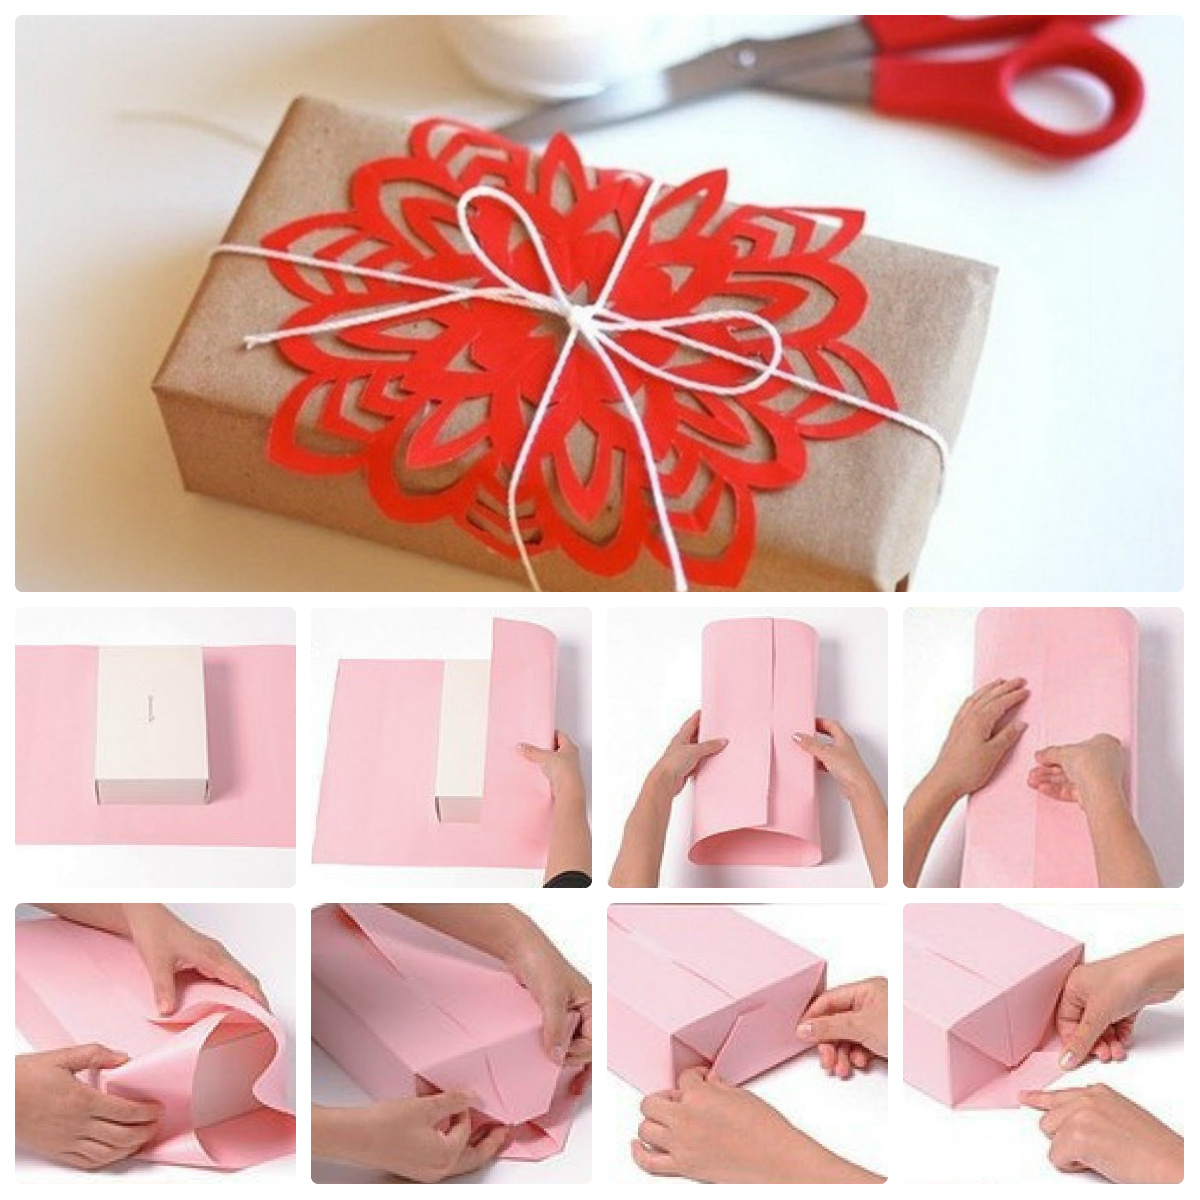 Как красиво упаковать подарок своими руками